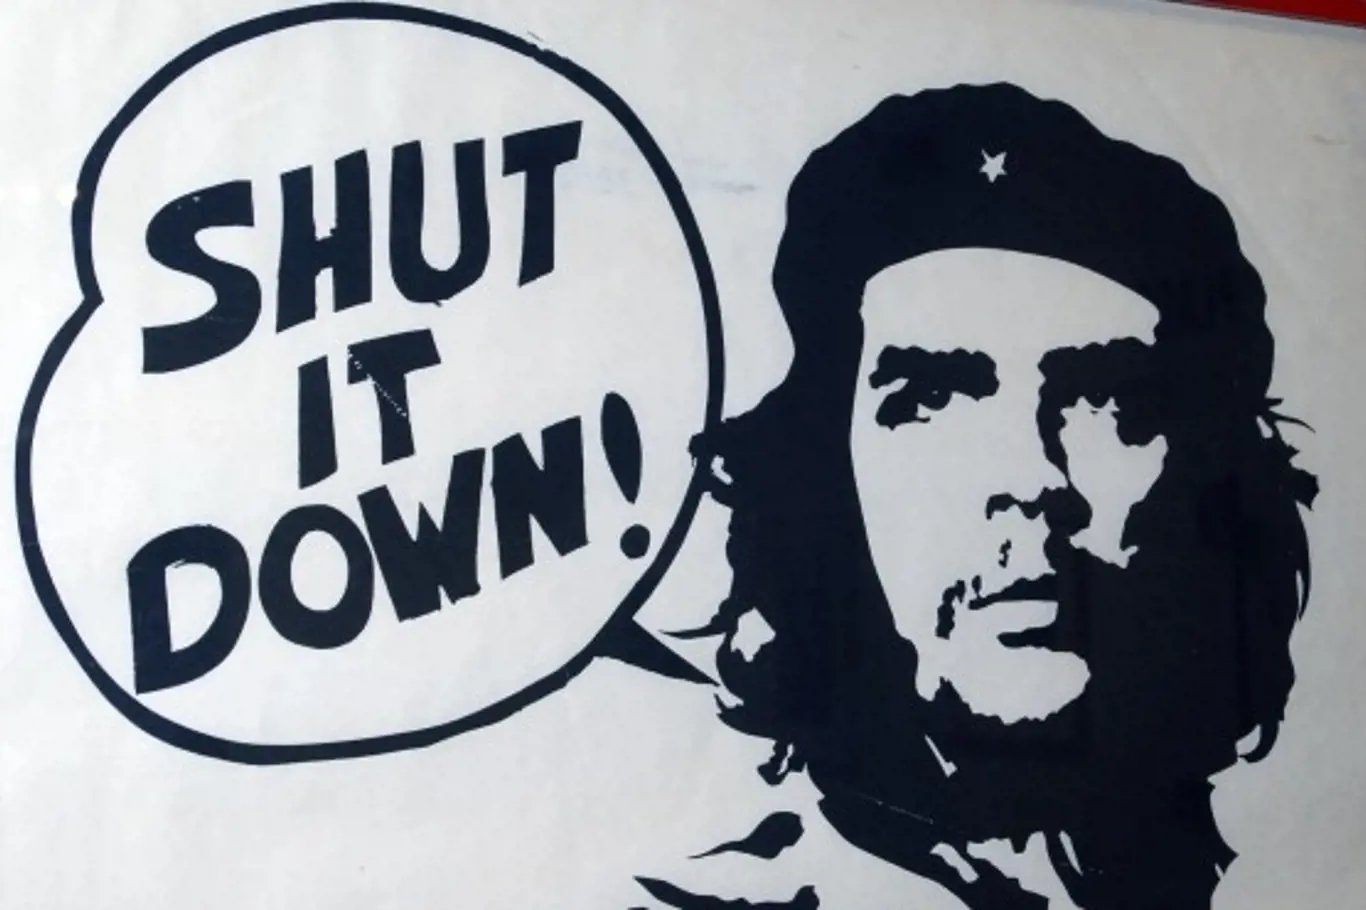 Hele Guevara! Proč se stal astmatický kluk Ježíšem latinské Ameriky